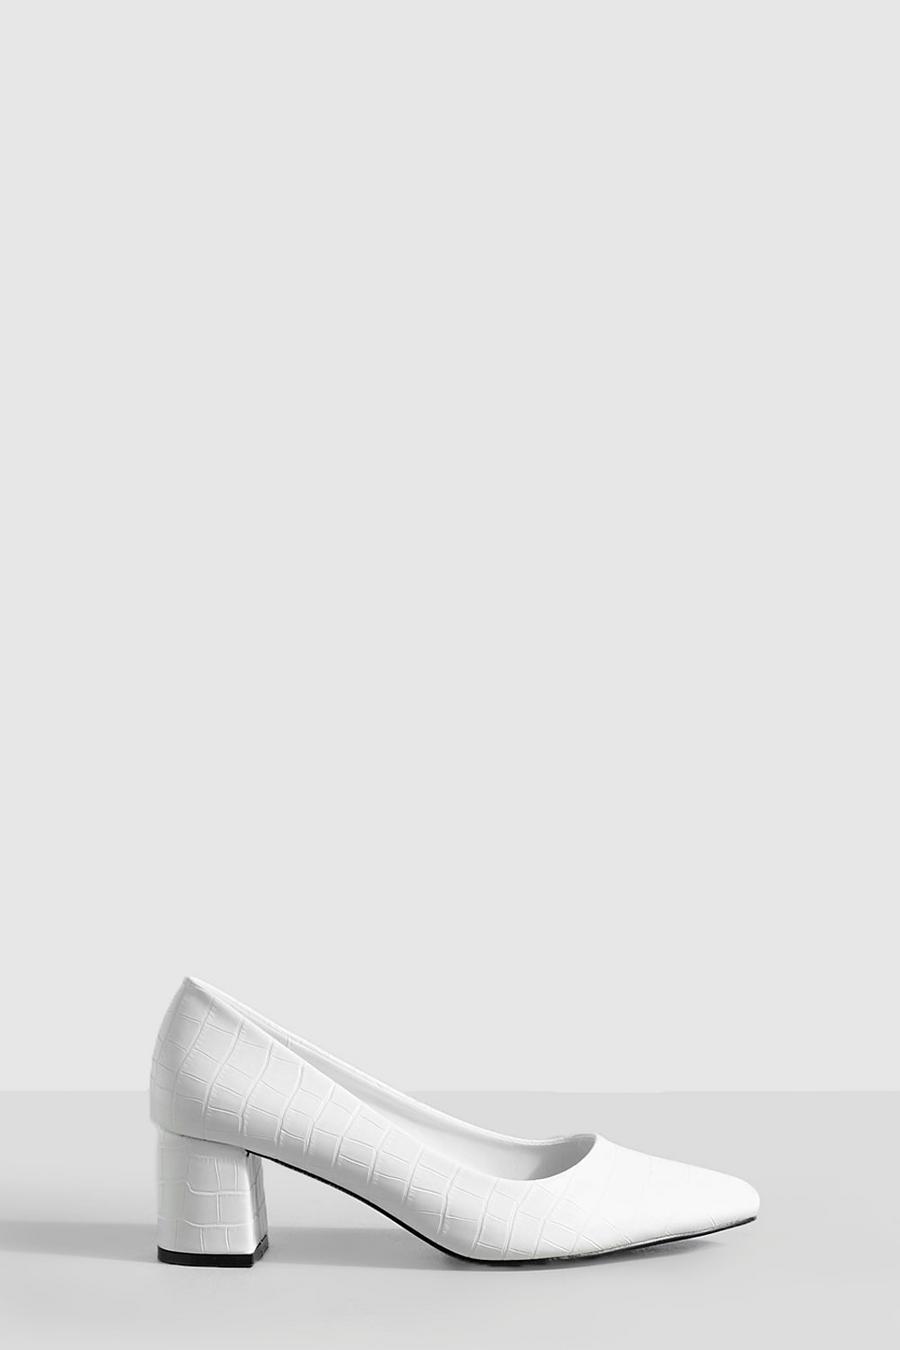 Zapatos de salón de holgura ancha bajos gruesos con acabado de cocodrilo, White blanco